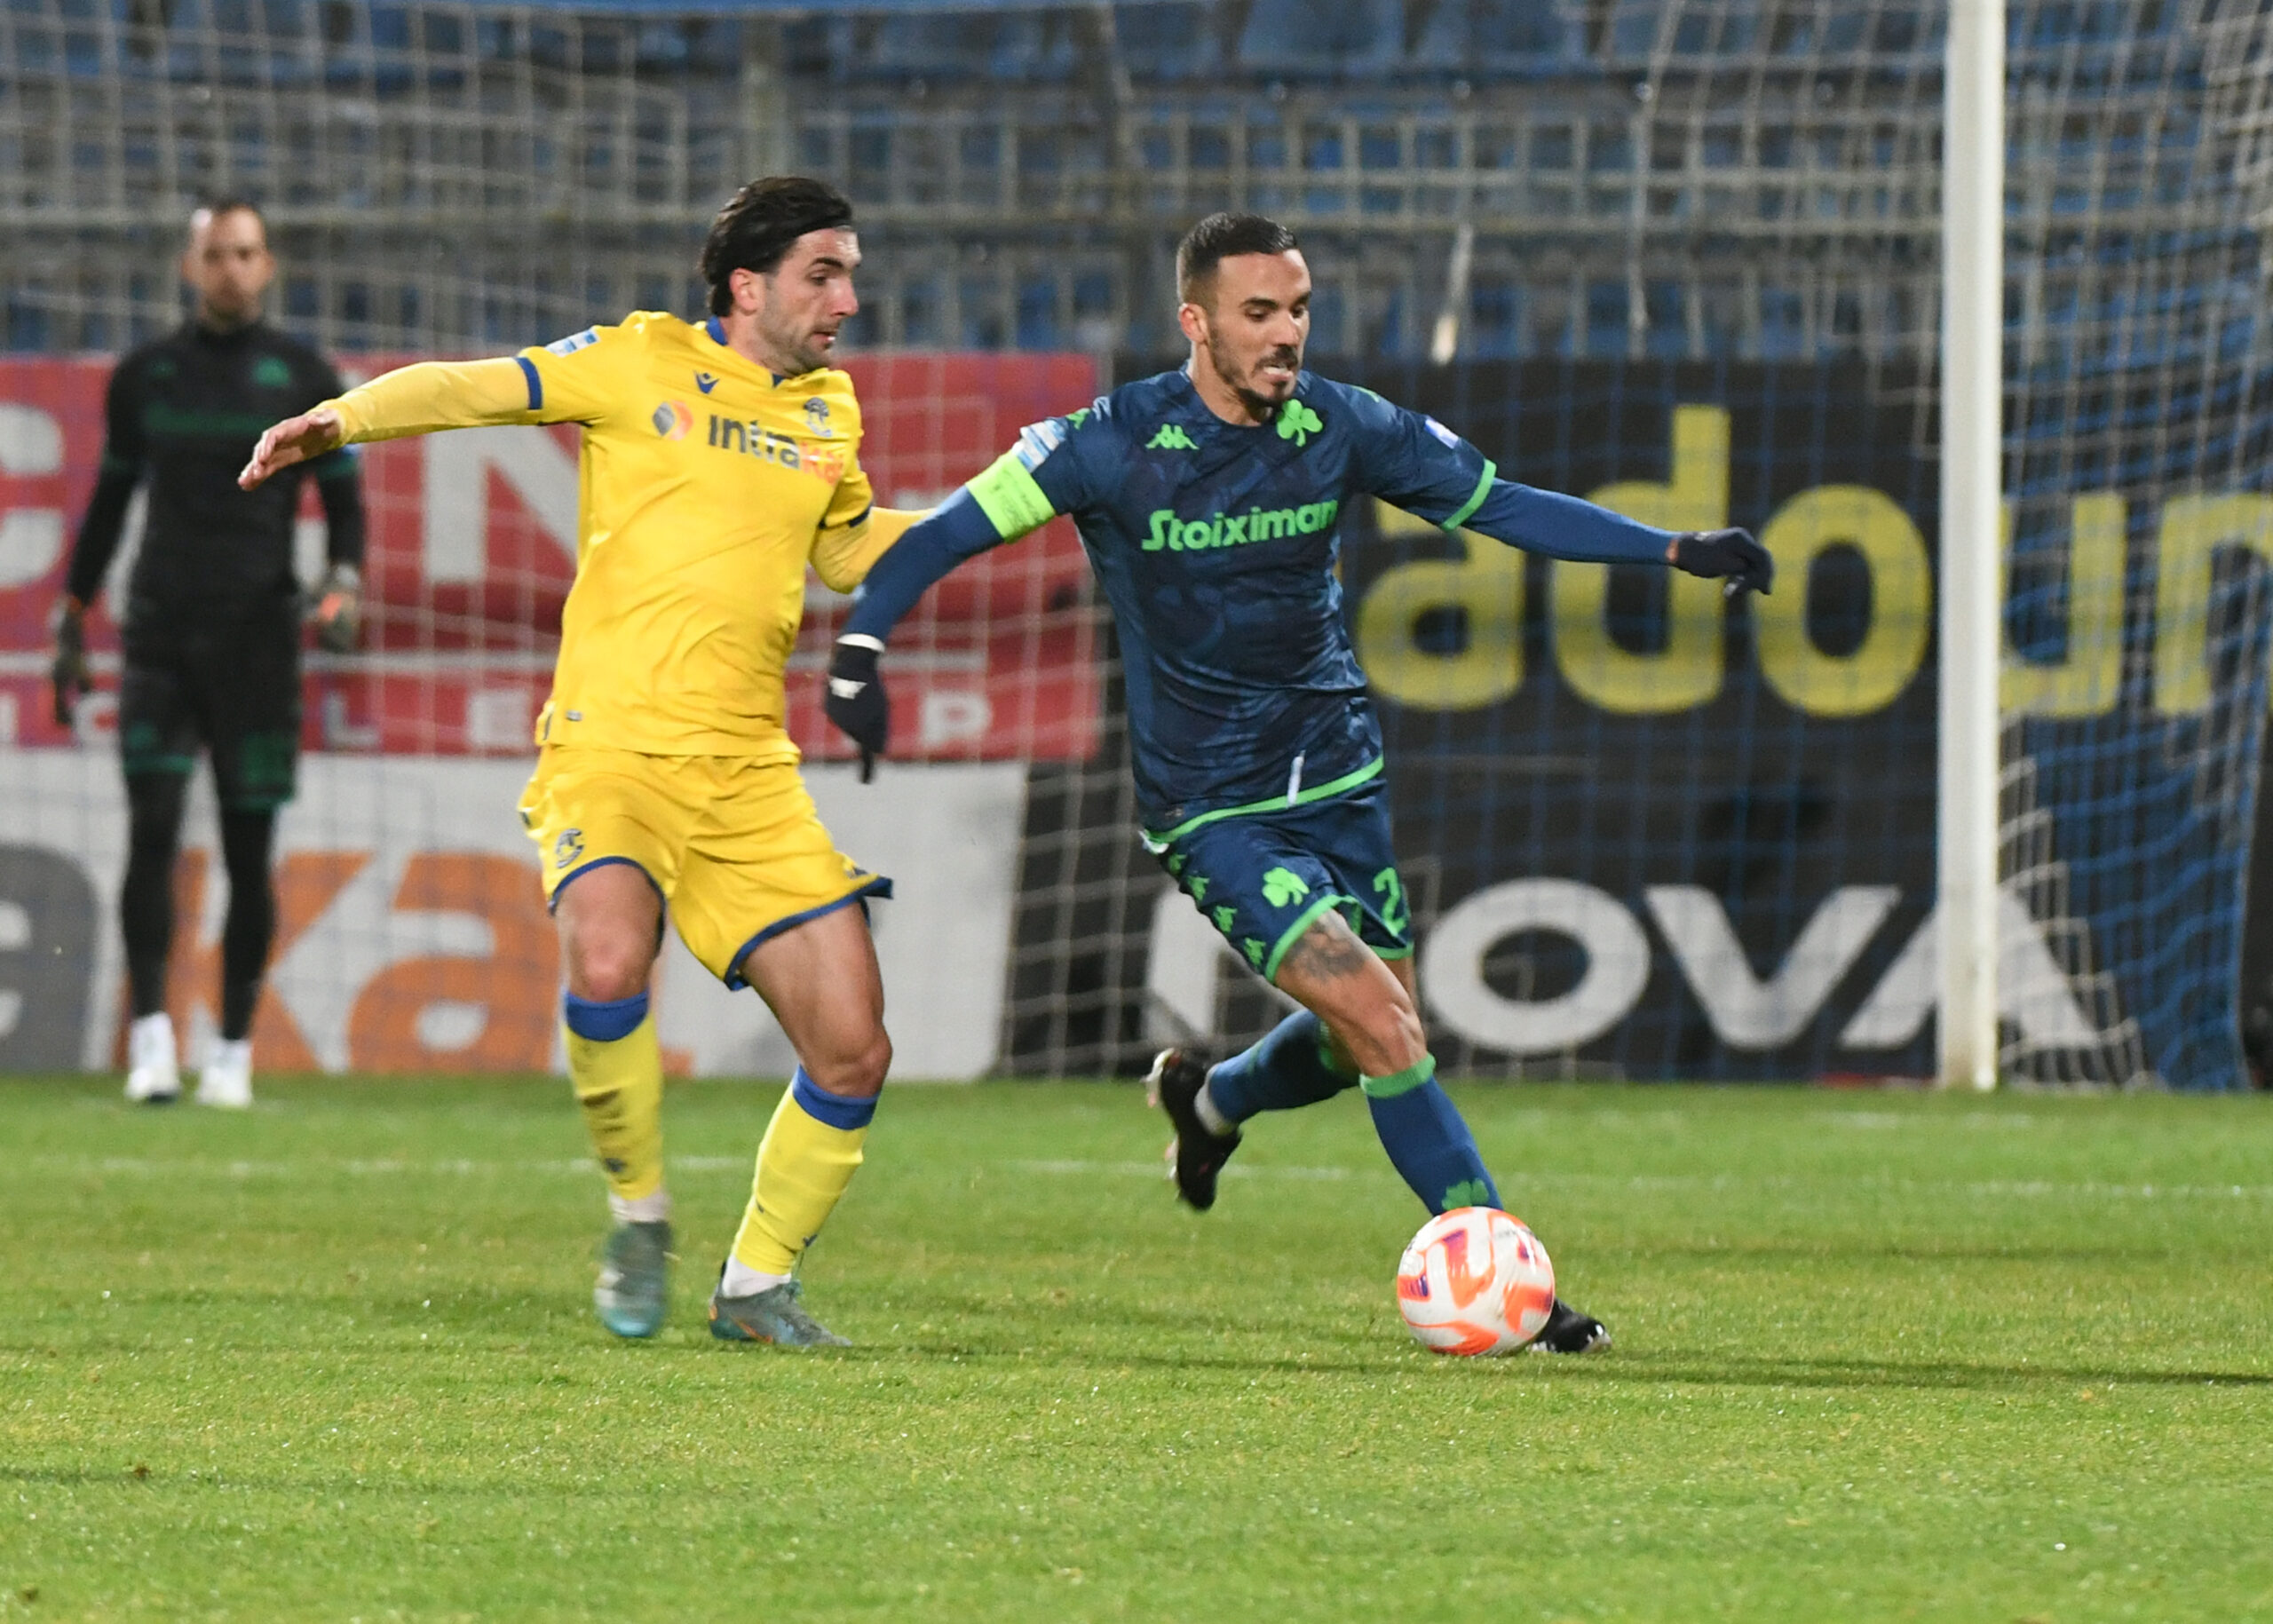 Αστέρας Τρίπολης - Παναθηναϊκός 1-0: Ο Κουρμπέλης "πλήγωσε" τους πράσινους και ο Αστέρας τους άφησε δεύτερους